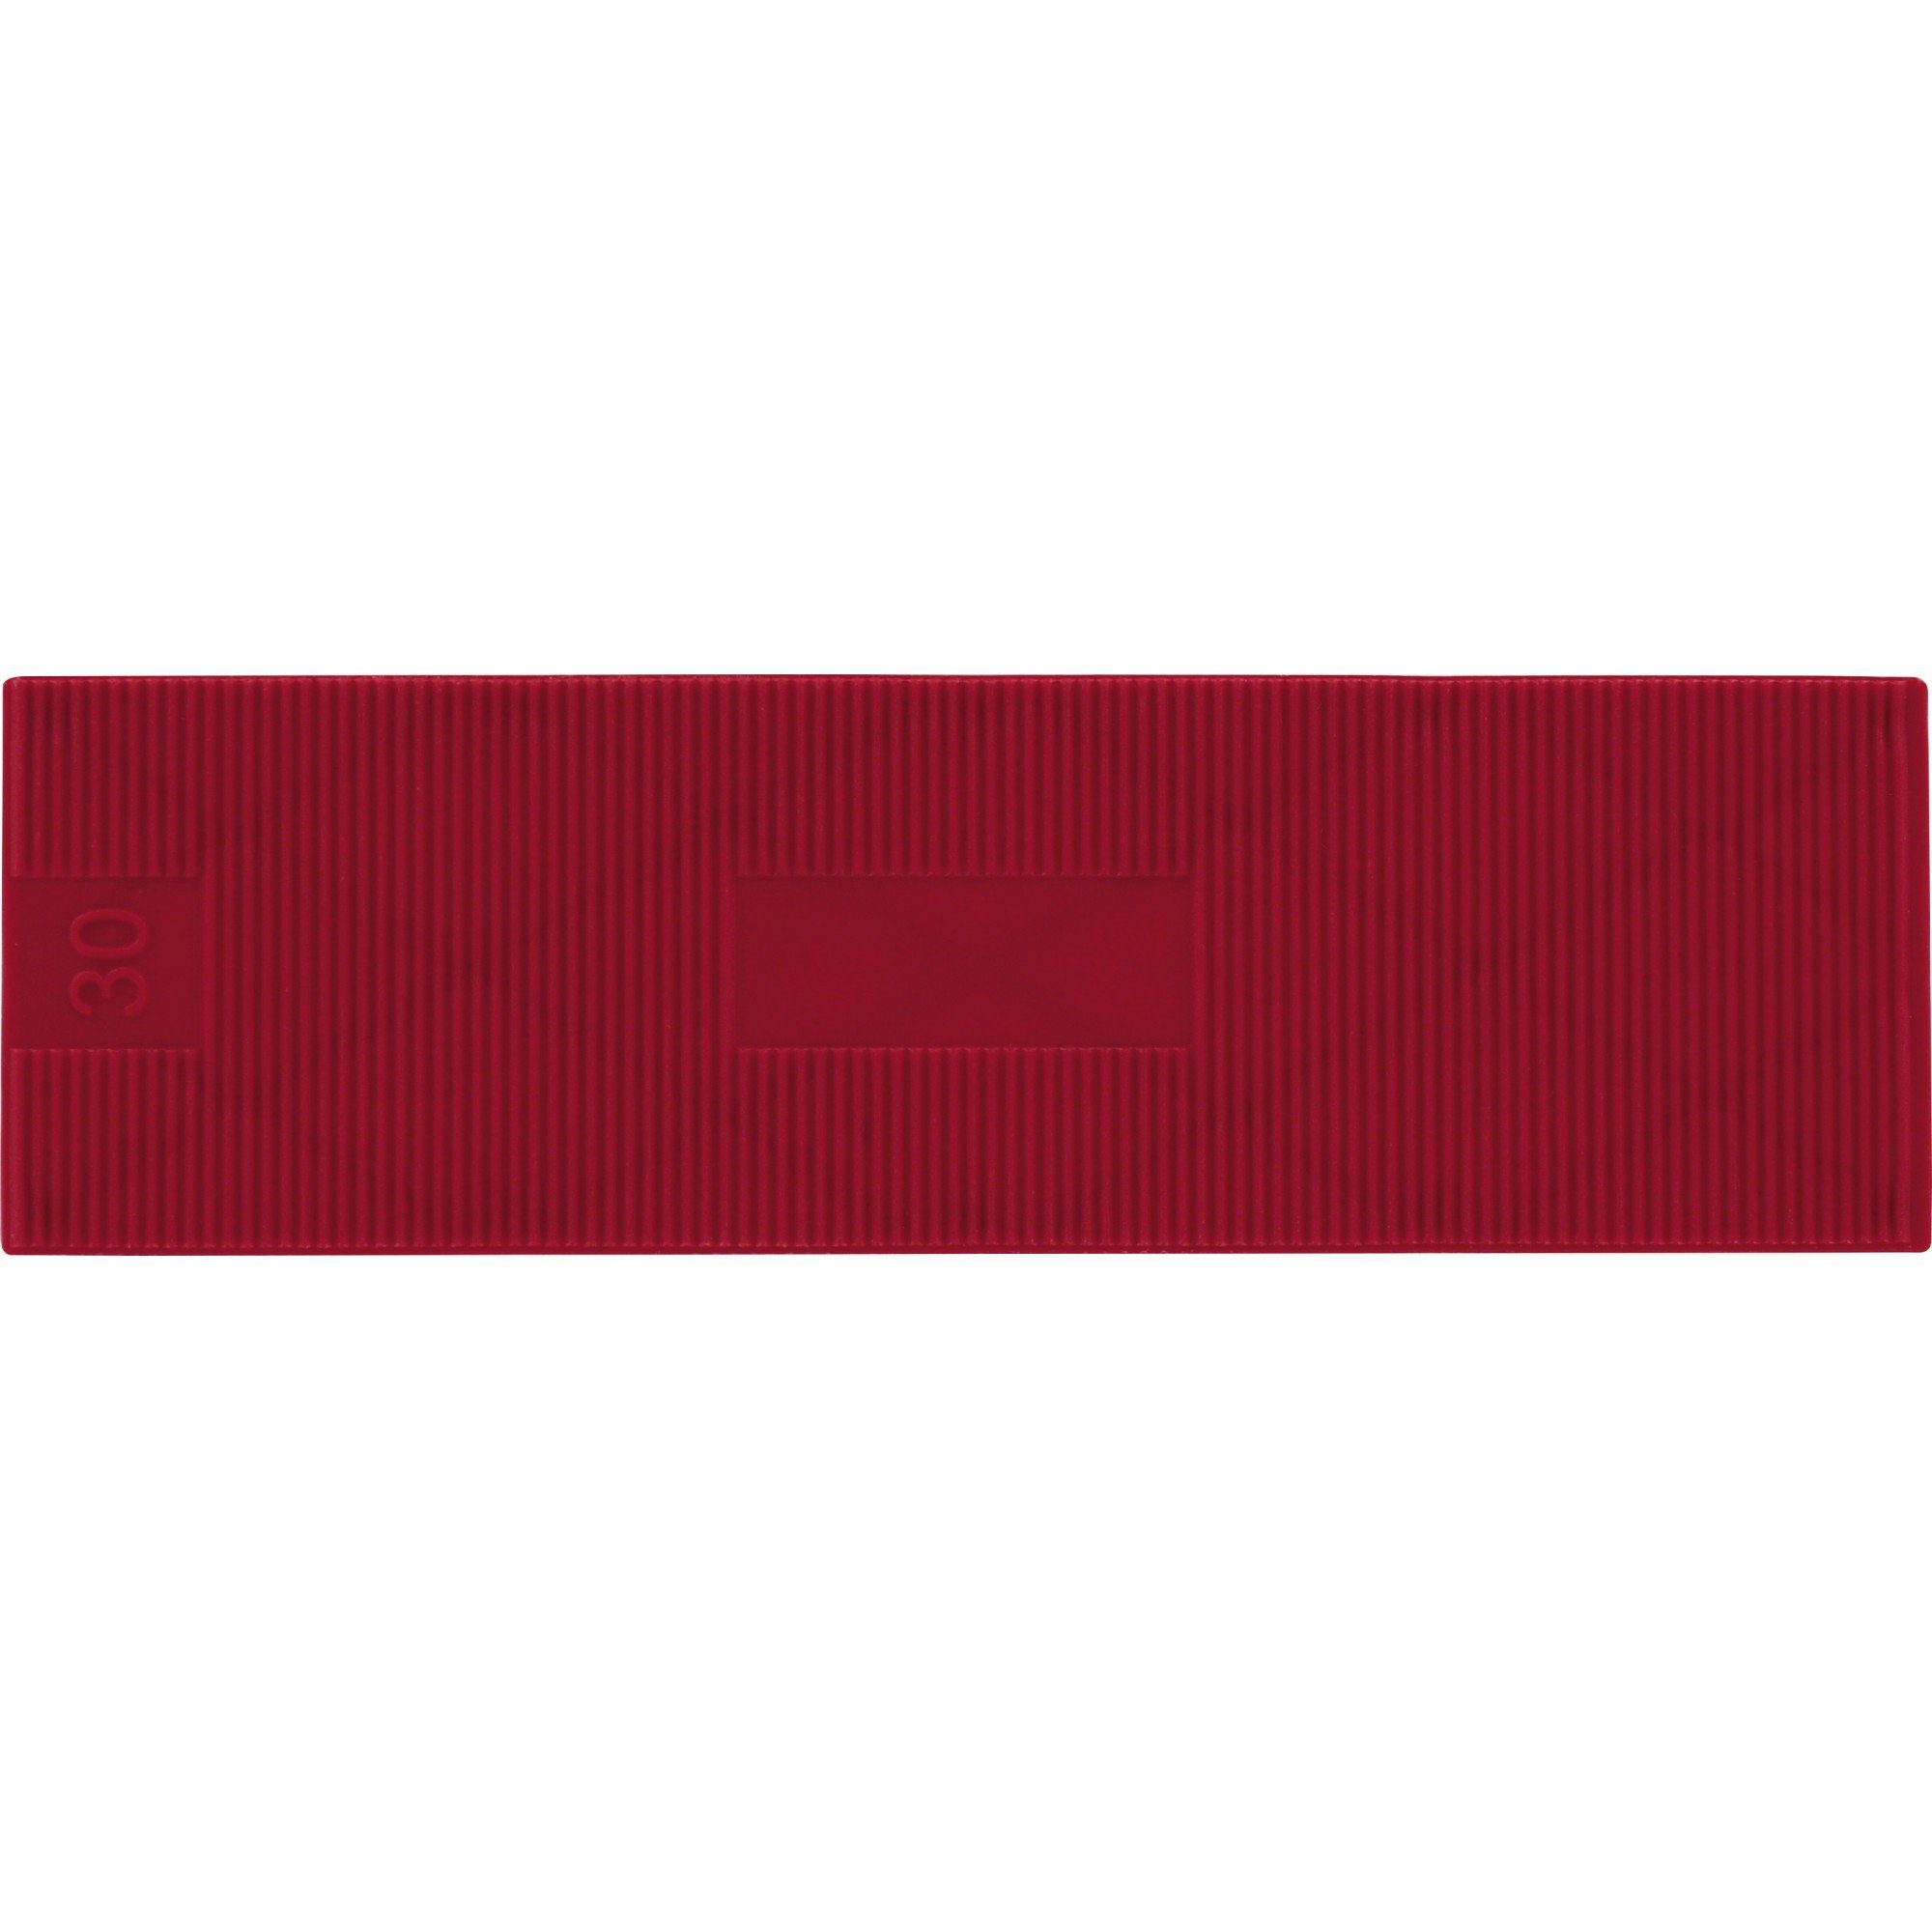 Triuso Verlegekeil PP Verglasungsklötze Montagekeile Unterlegplättchen 100 x 30mm rot, (50 Stück), hohe Tragfähigkeit - Druckfestigkeit 80 n/mm²